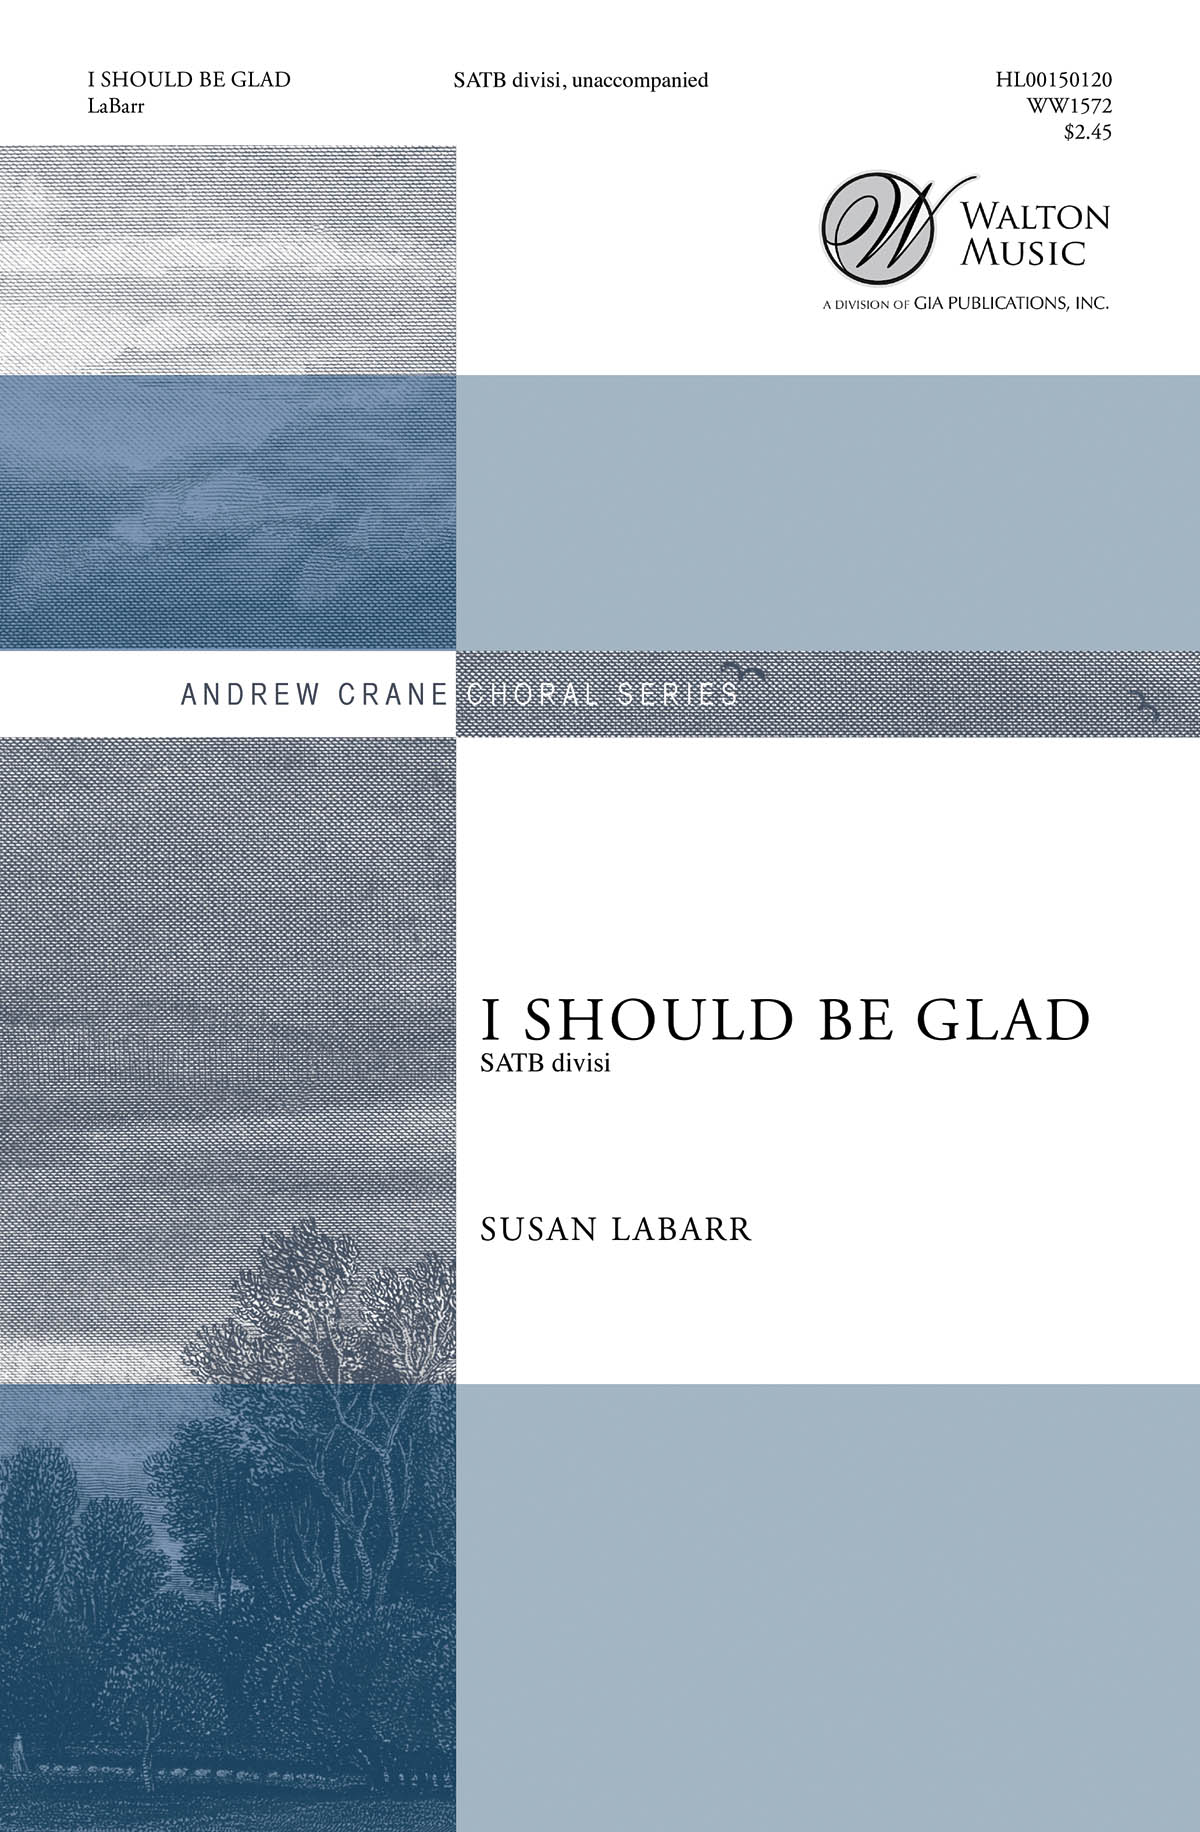 Susan LaBarr: I Should Be Glad: Mixed Choir a Cappella: Vocal Score